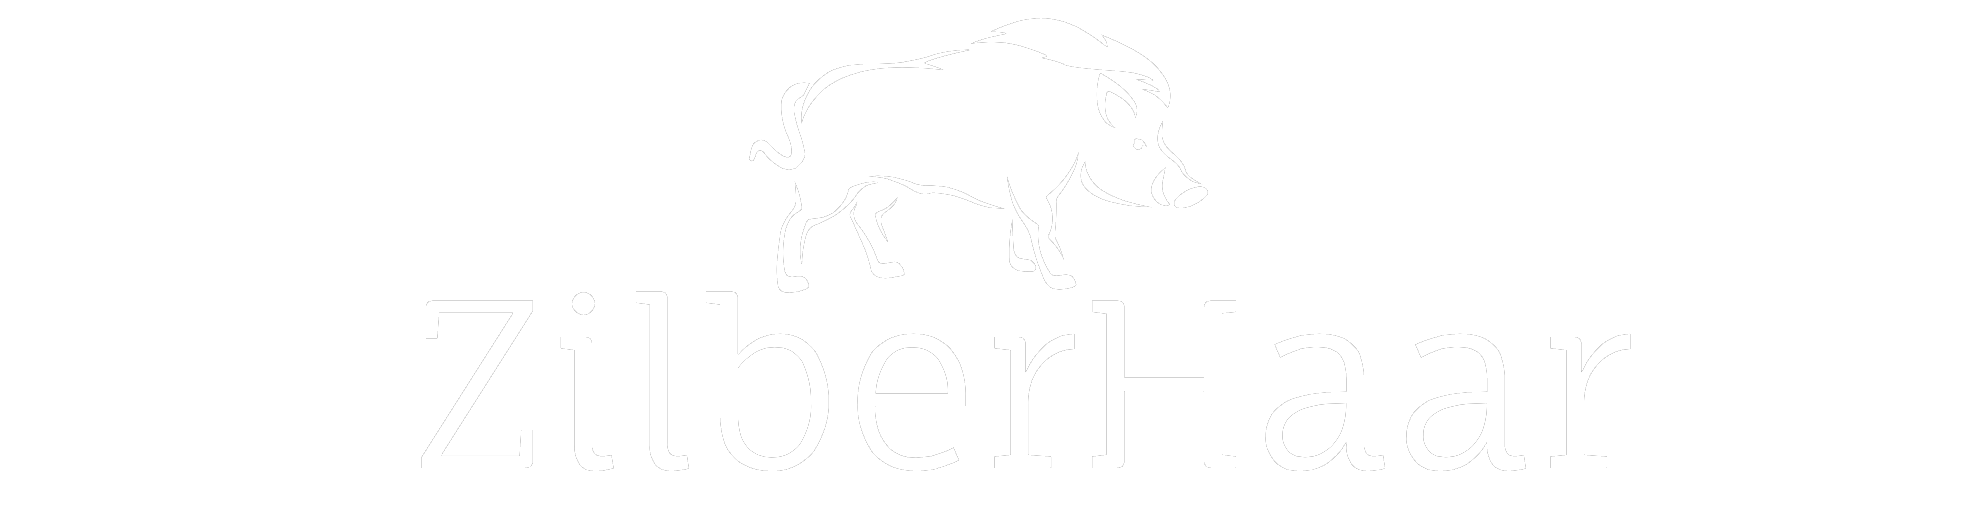 ZilberHaar logo